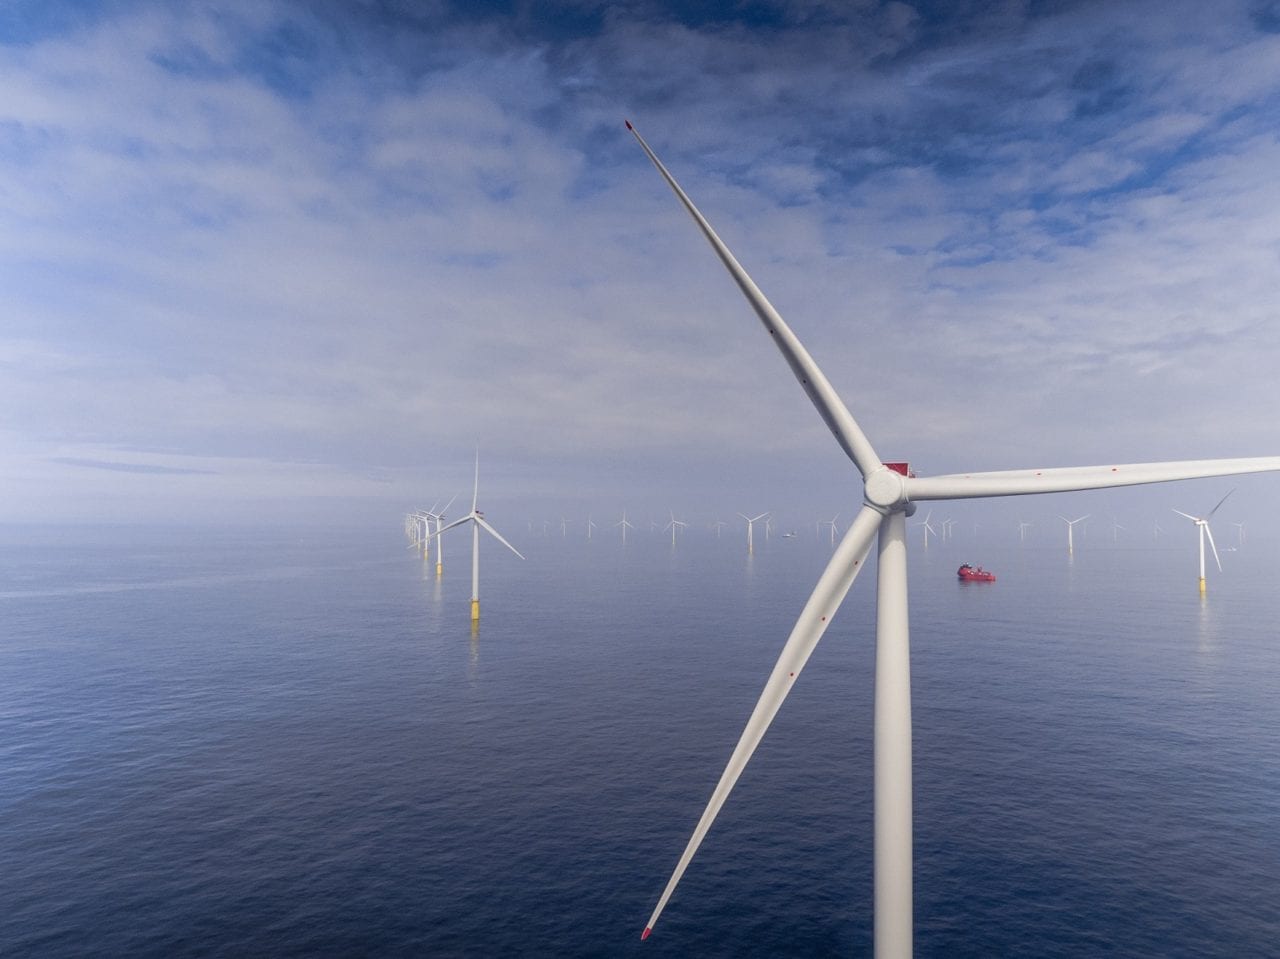 Dominion Estimates $10B Installation Cost for 2.6-GW Virginia Offshore Wind Farm